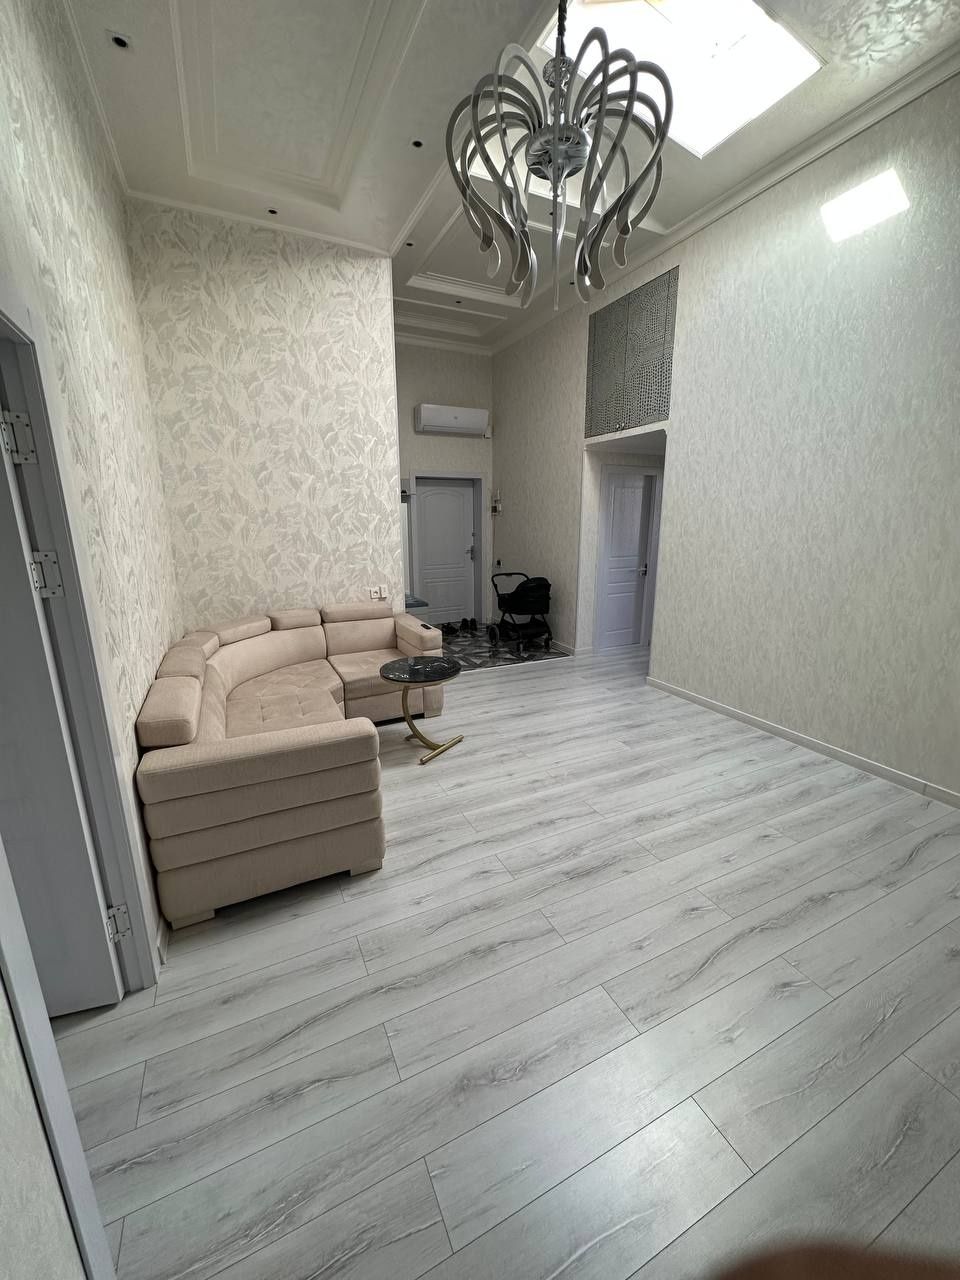 Продается 4-хкомнатная квартира в Новостройке в Янгихаётском районе